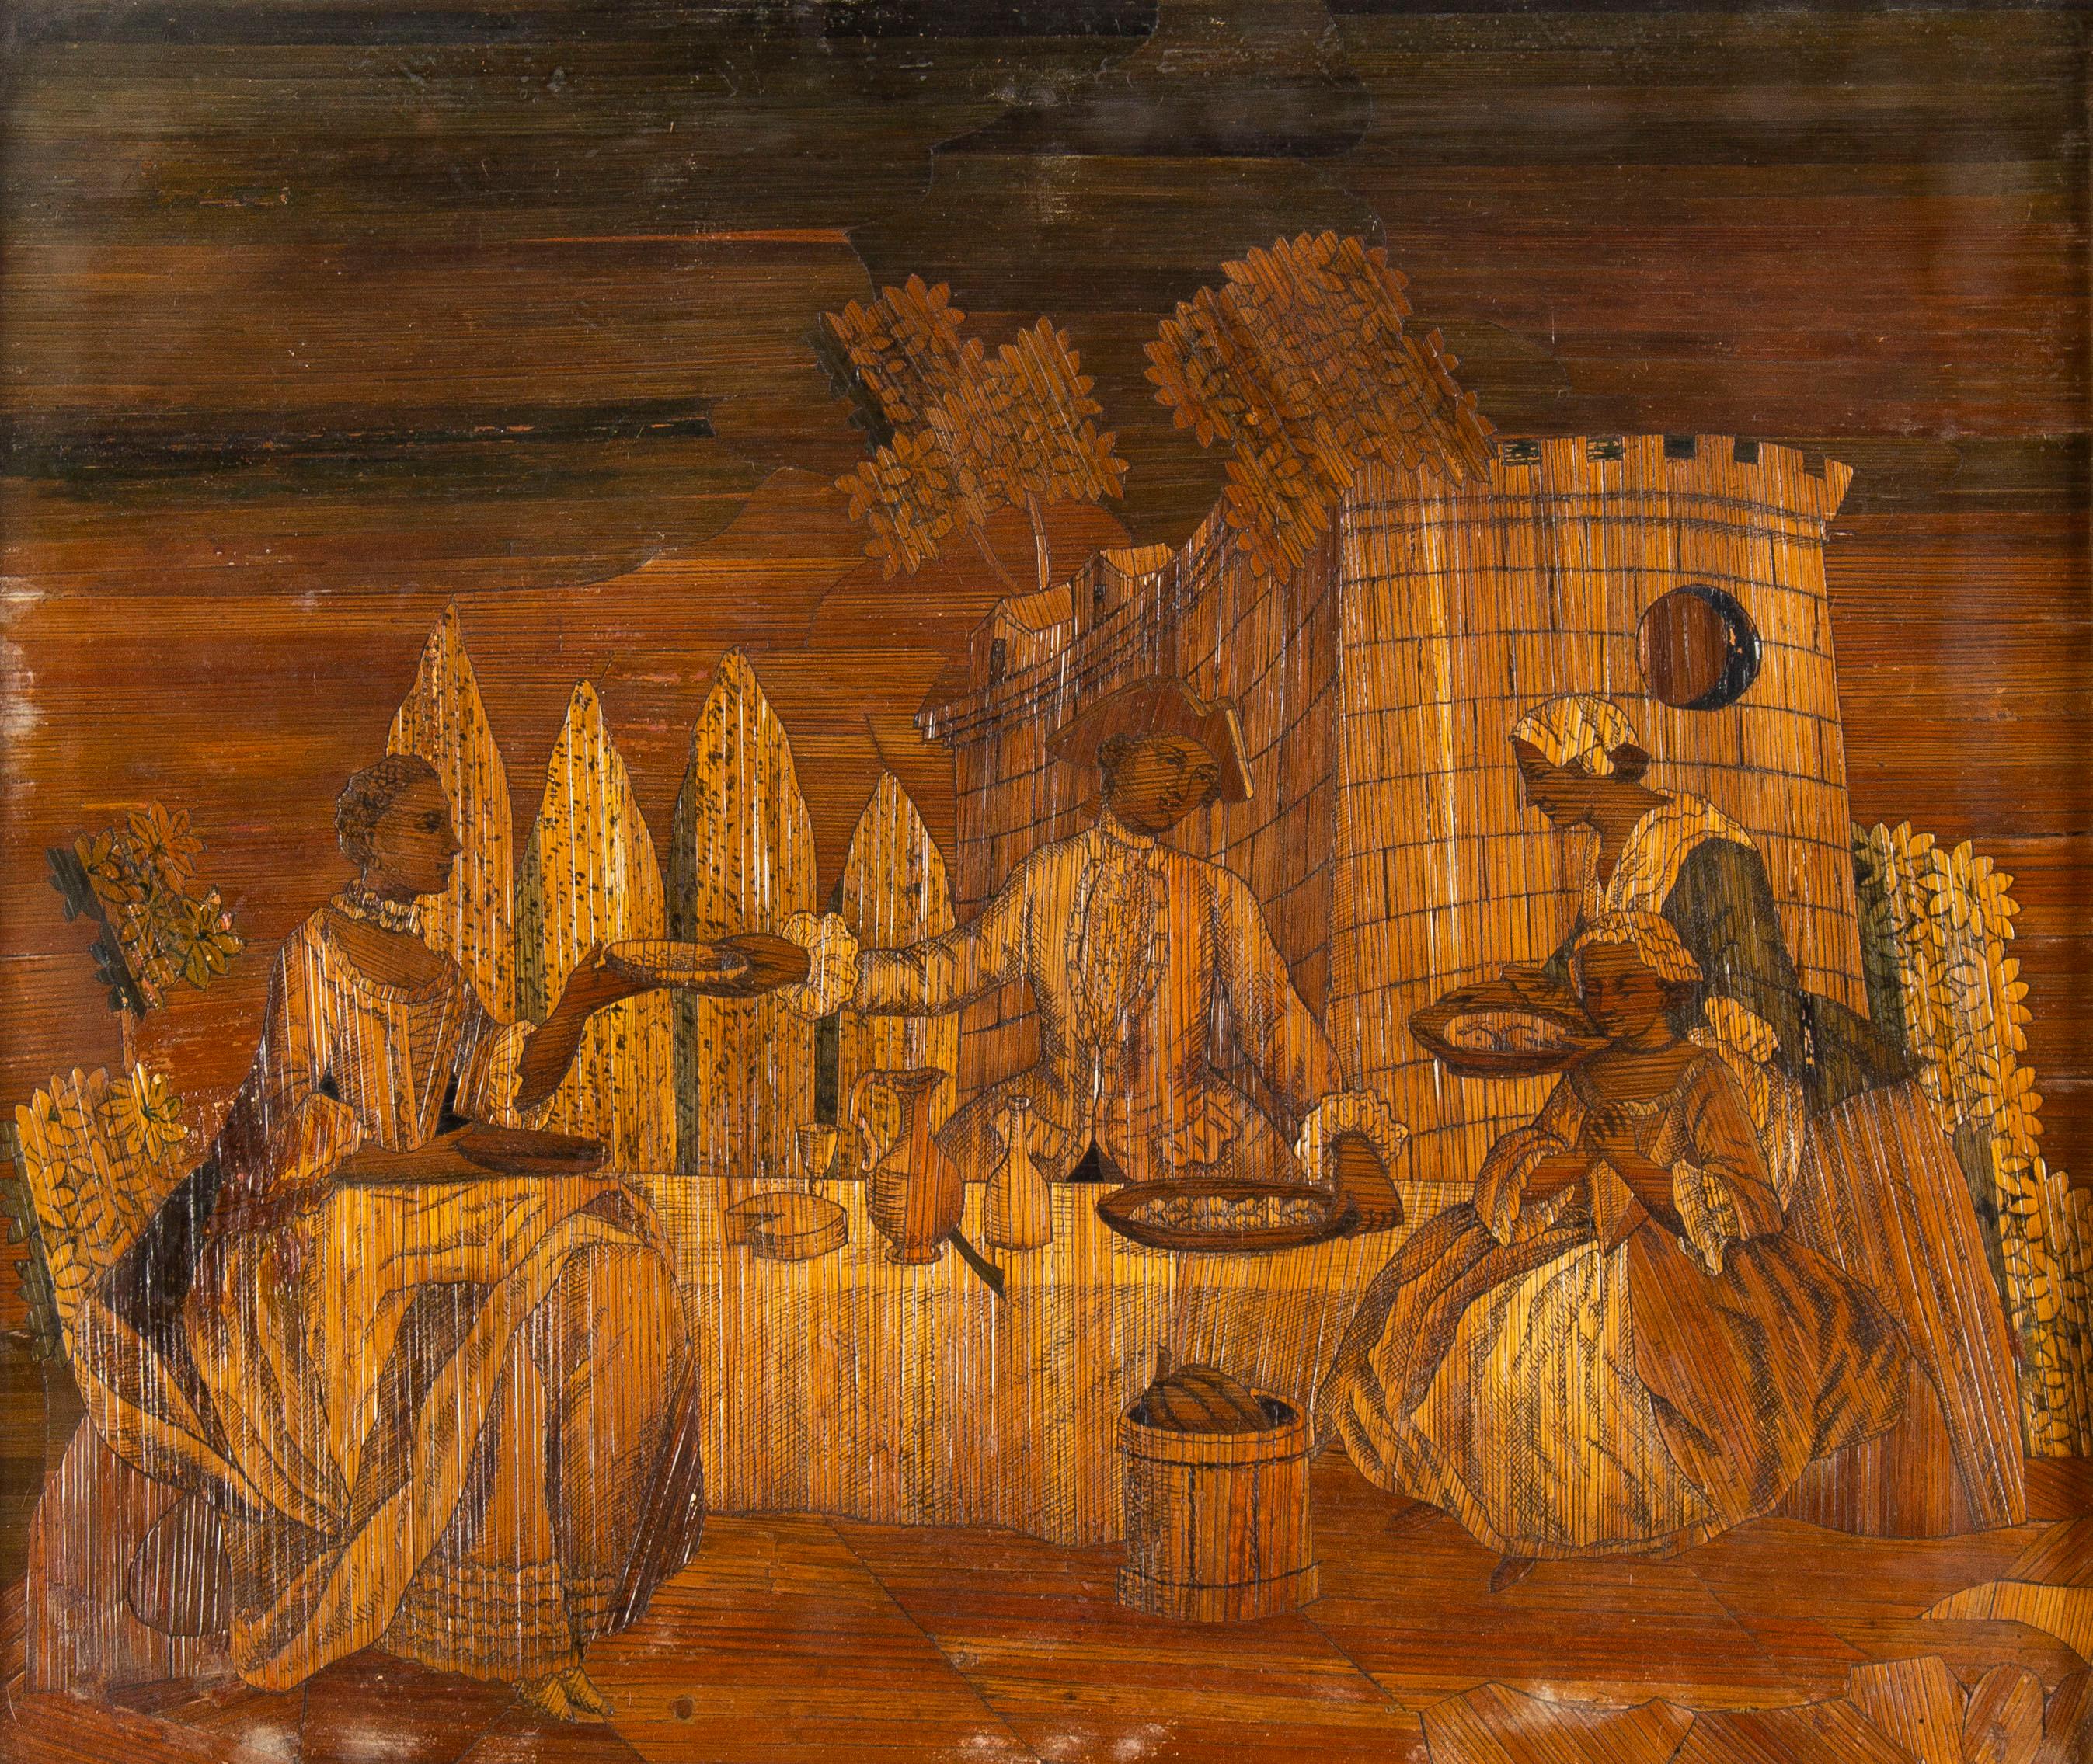 Fete Galante-Szene aus der Piemont-Schule des 18. Jahrhunderts.
Bambus-Inlay-Collage auf Leinwand in geschnitztem antiken Rahmen.

Netzgröße: 40 x 49 cm
Größe mit Rahmen: 53 x 61,5 cm
